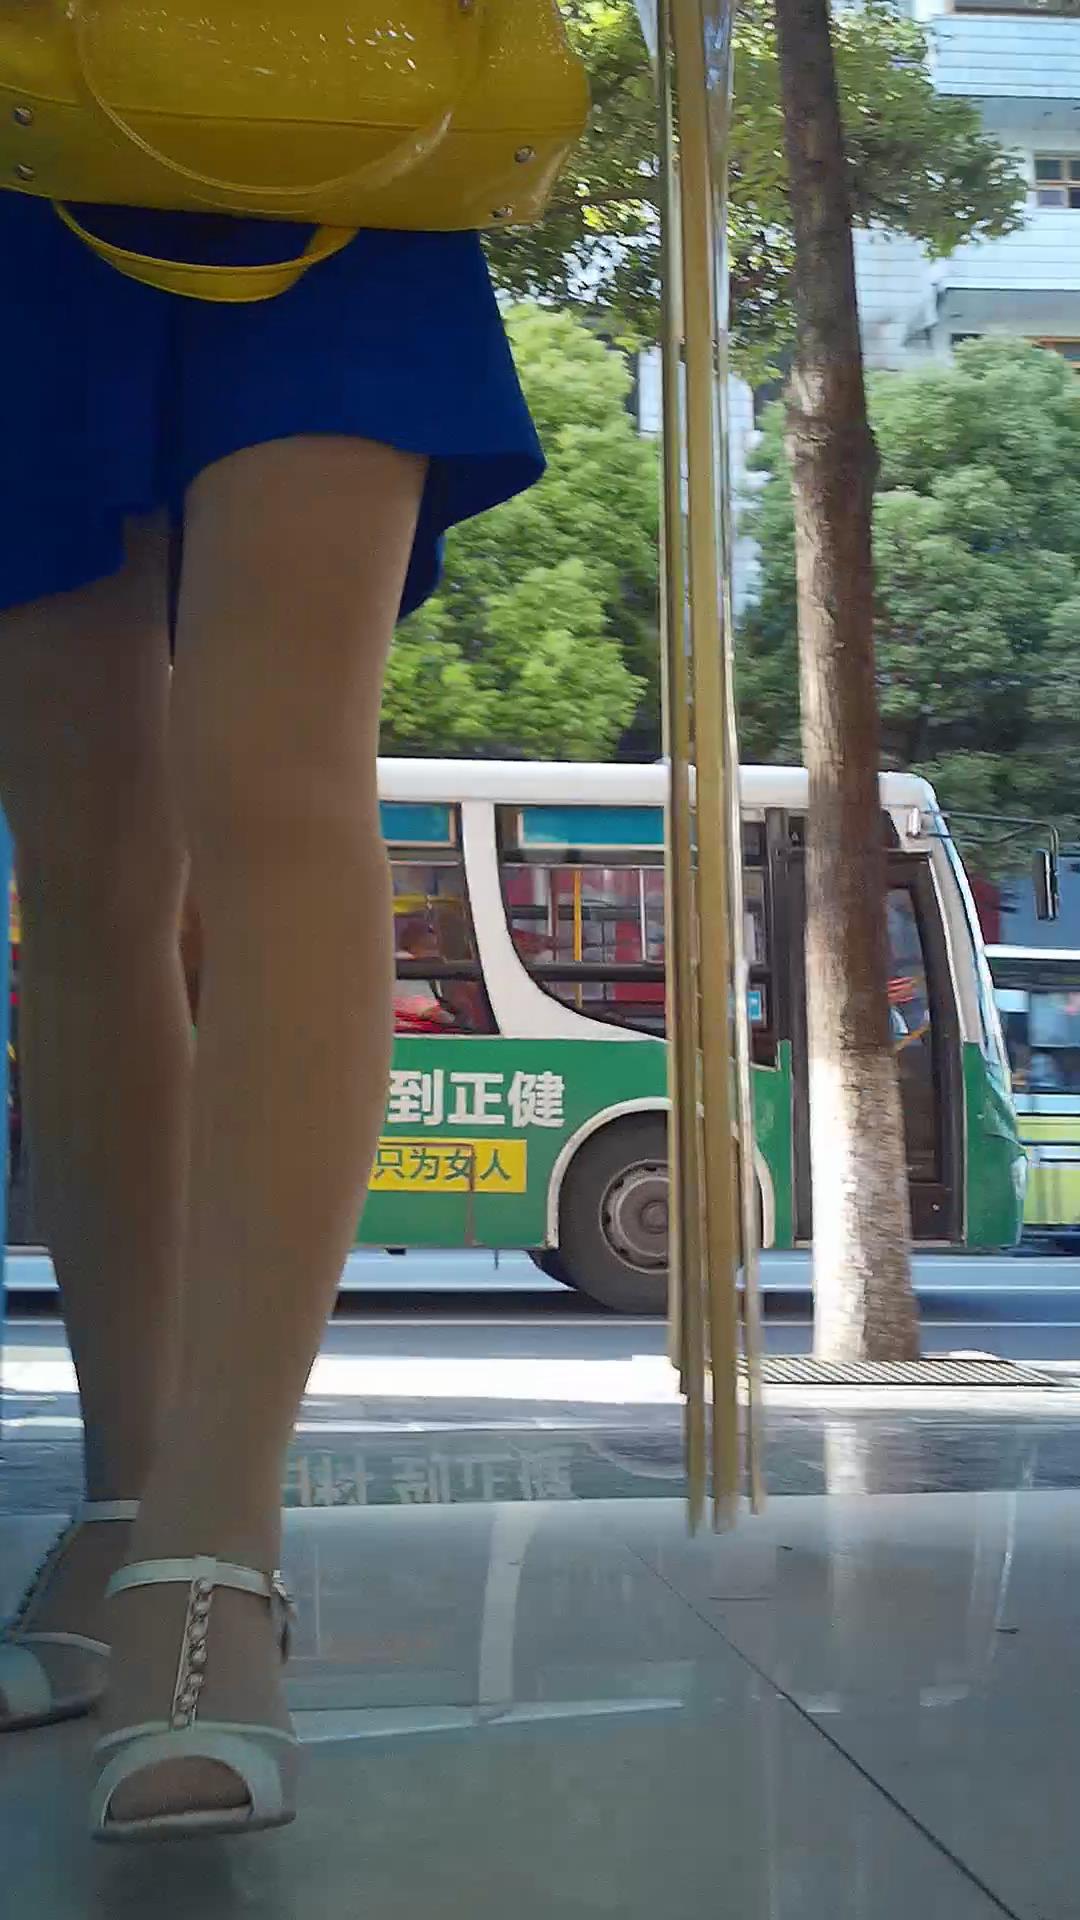 不负春光.17p，重庆街拍[JSK·389ut] - 免费·街拍图片 - 第一街拍网